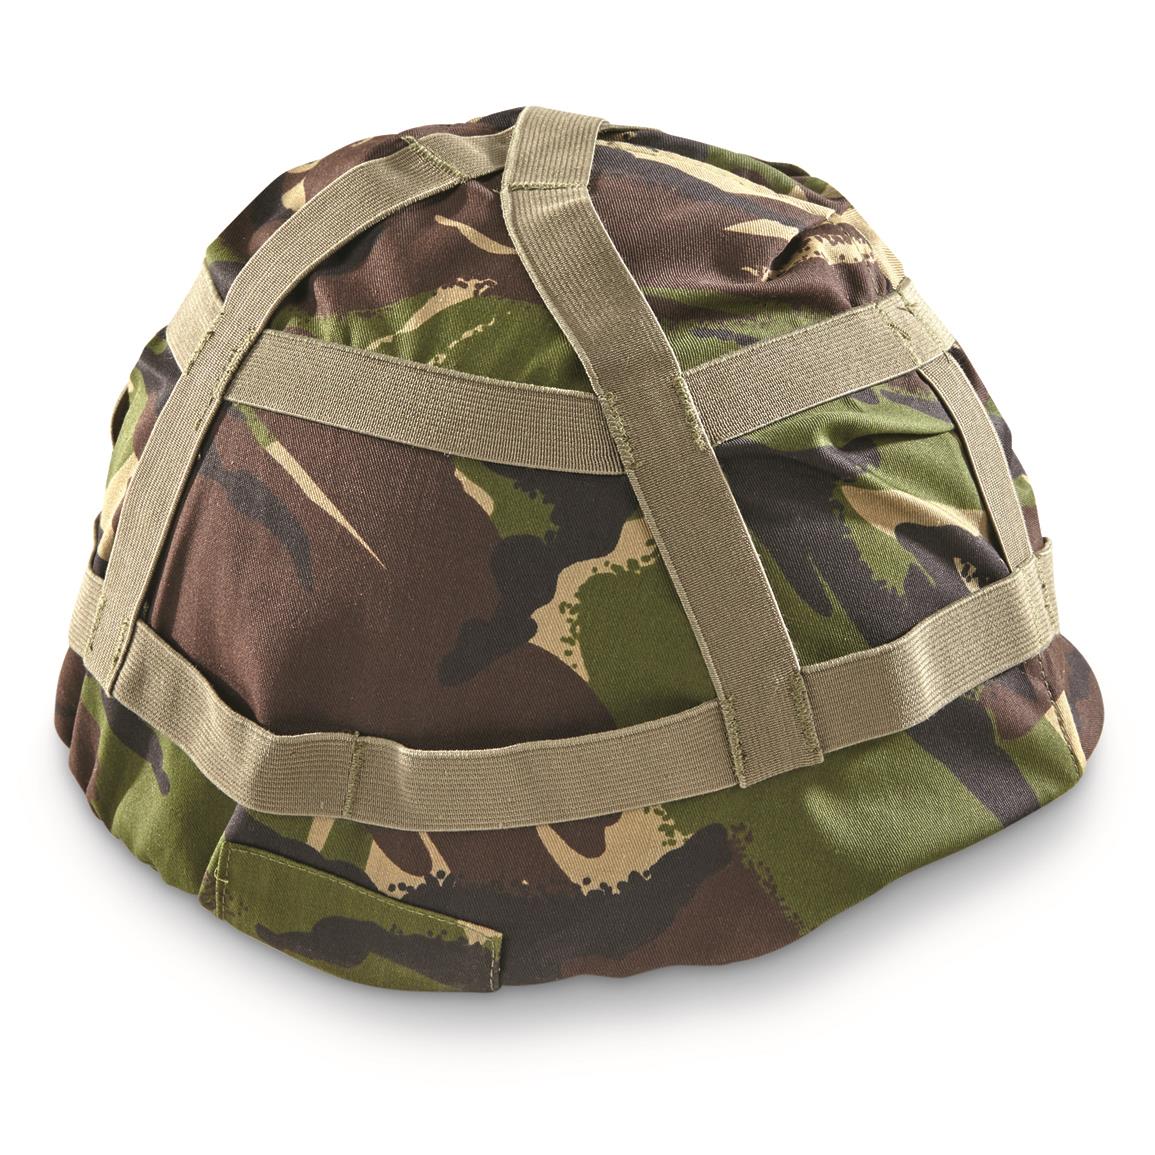 British Military Surplus DPM Mk 6 Helmet Cover, Like New